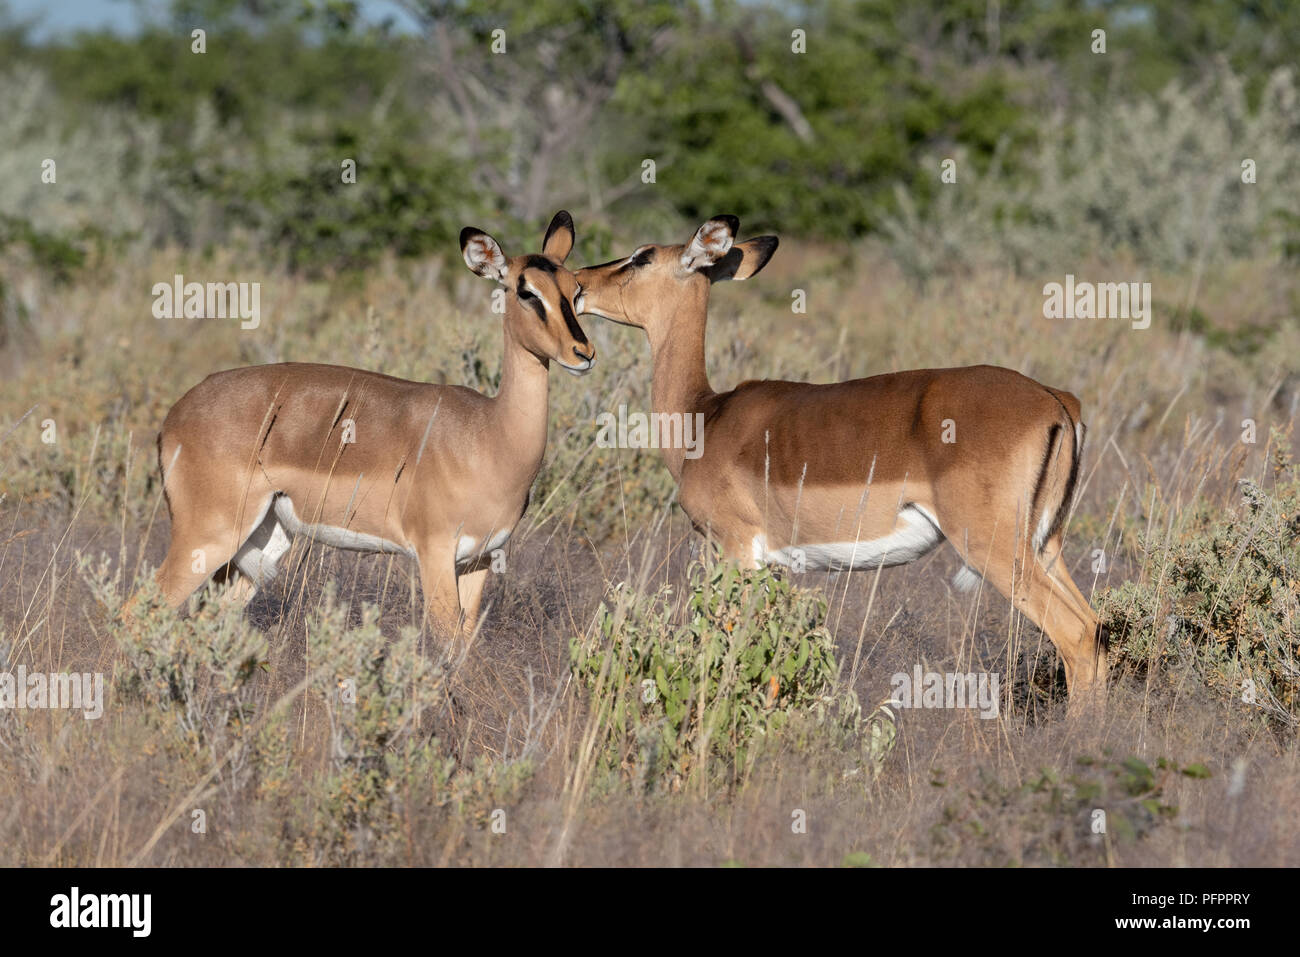 Ein Paar von zwei weiblichen Impala liebevoll Pflege für jeden anderen ständigen in Gras- und Buschlandschaft, Etosha National Park, Namibia Stockfoto